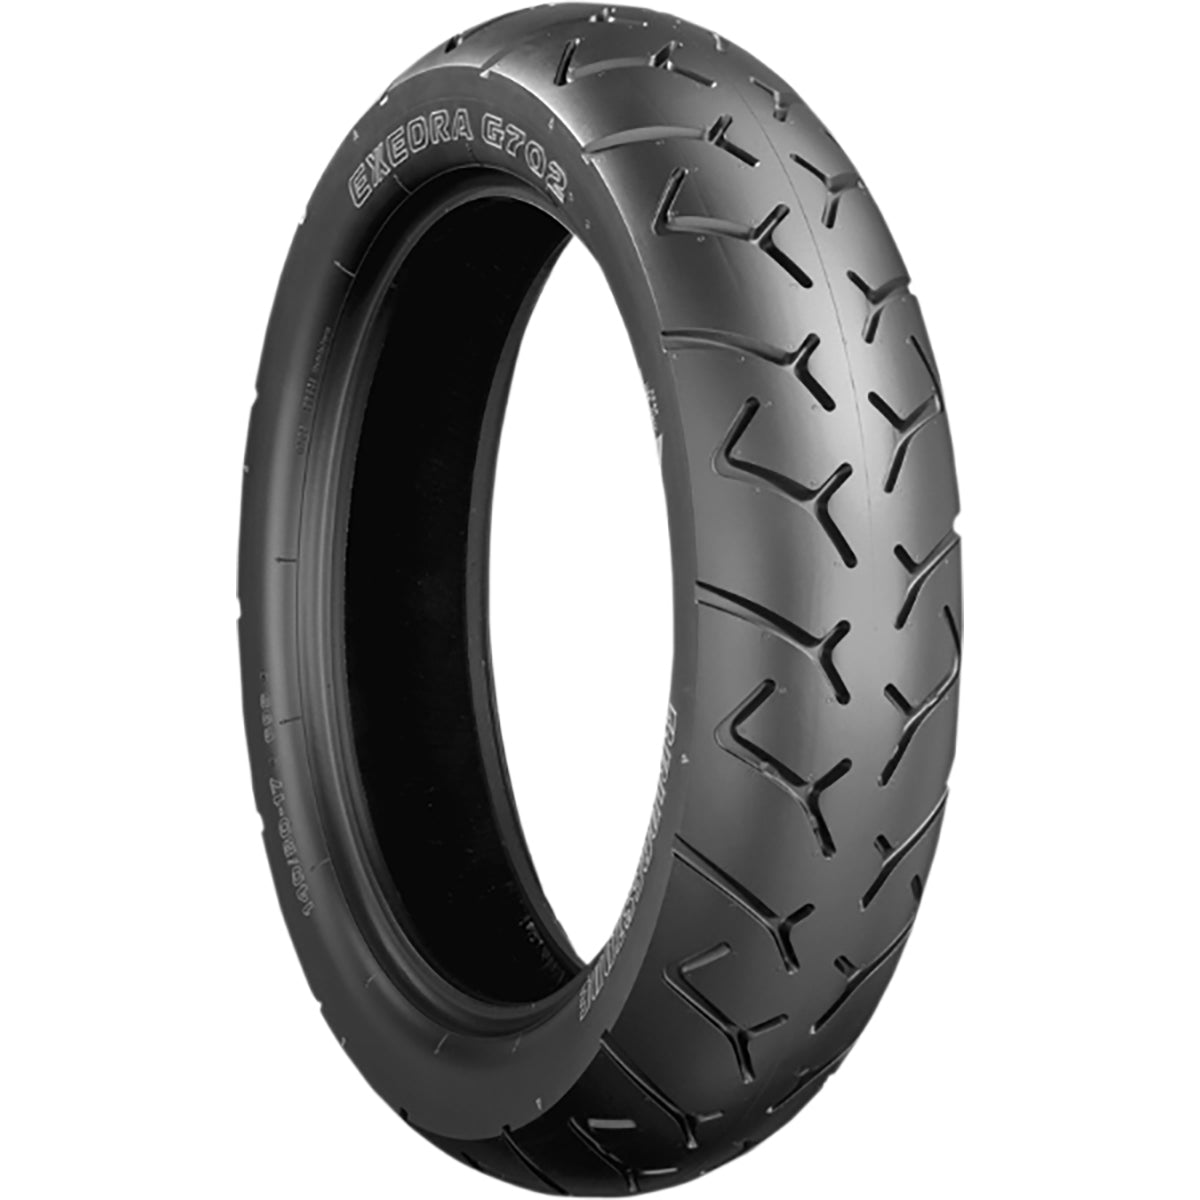 Bridgestone Exedra G702 16" Rear Street Tires